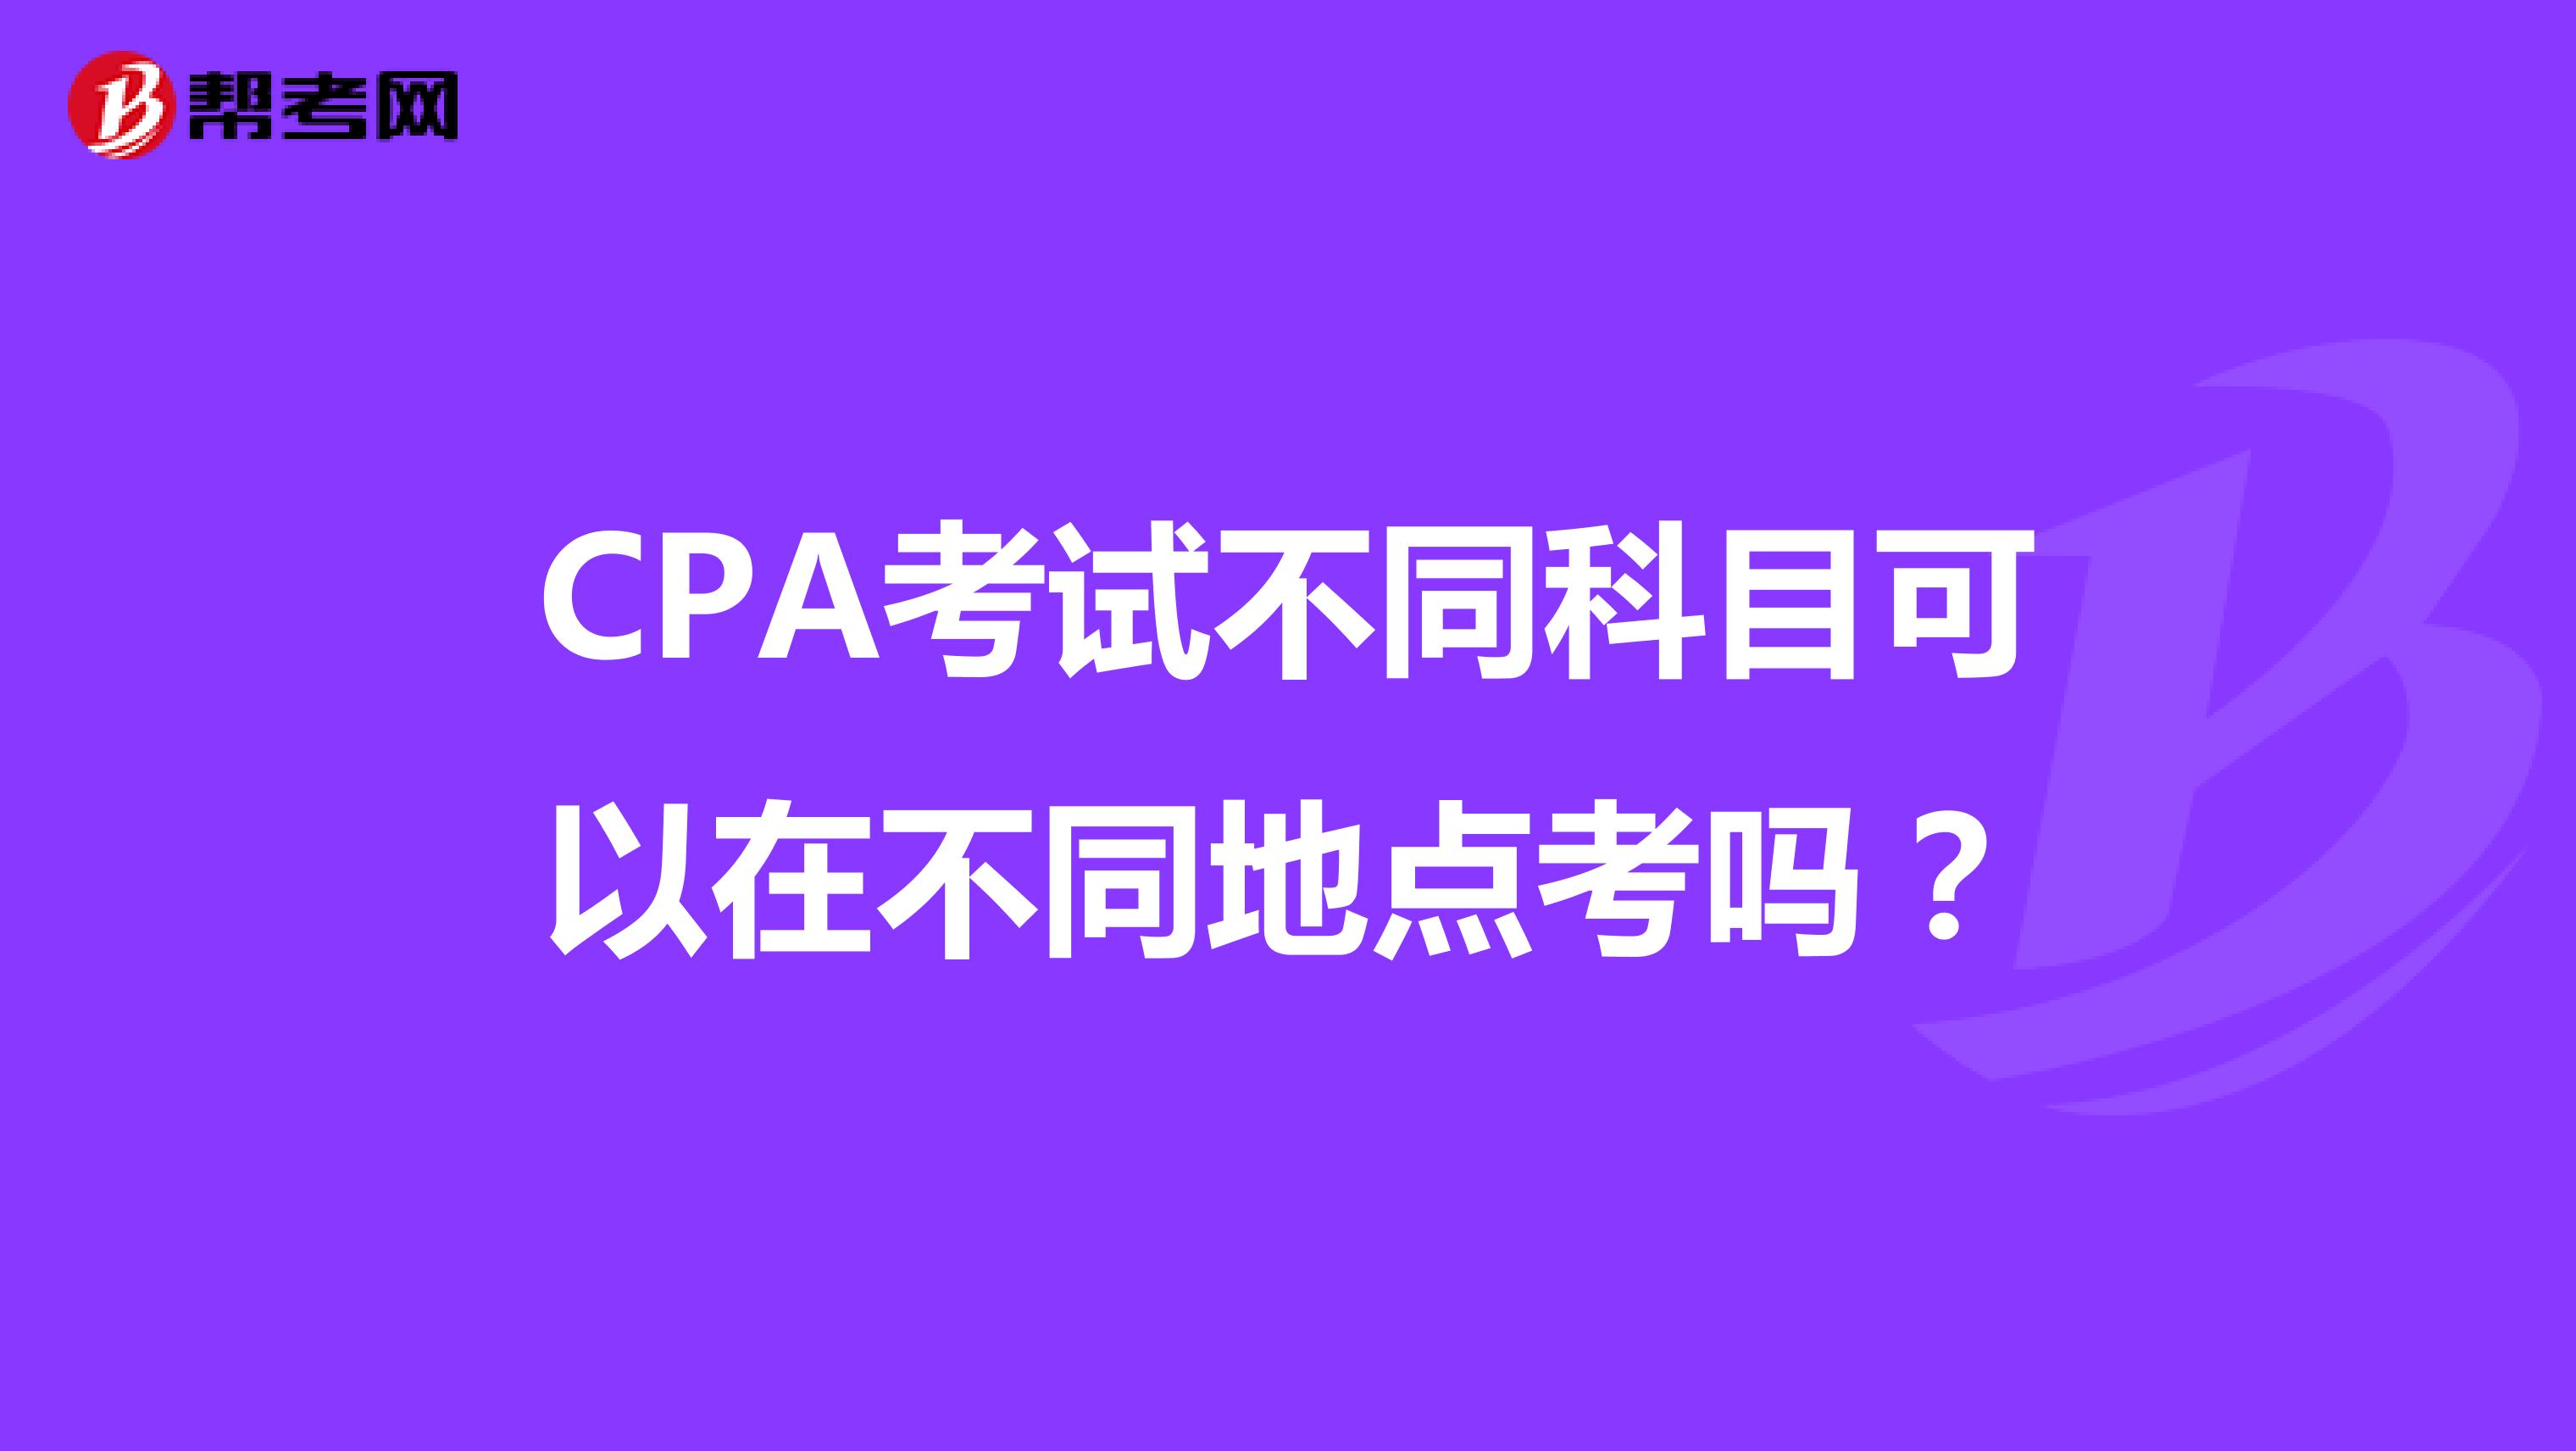 CPA考试不同科目可以在不同地点考吗？